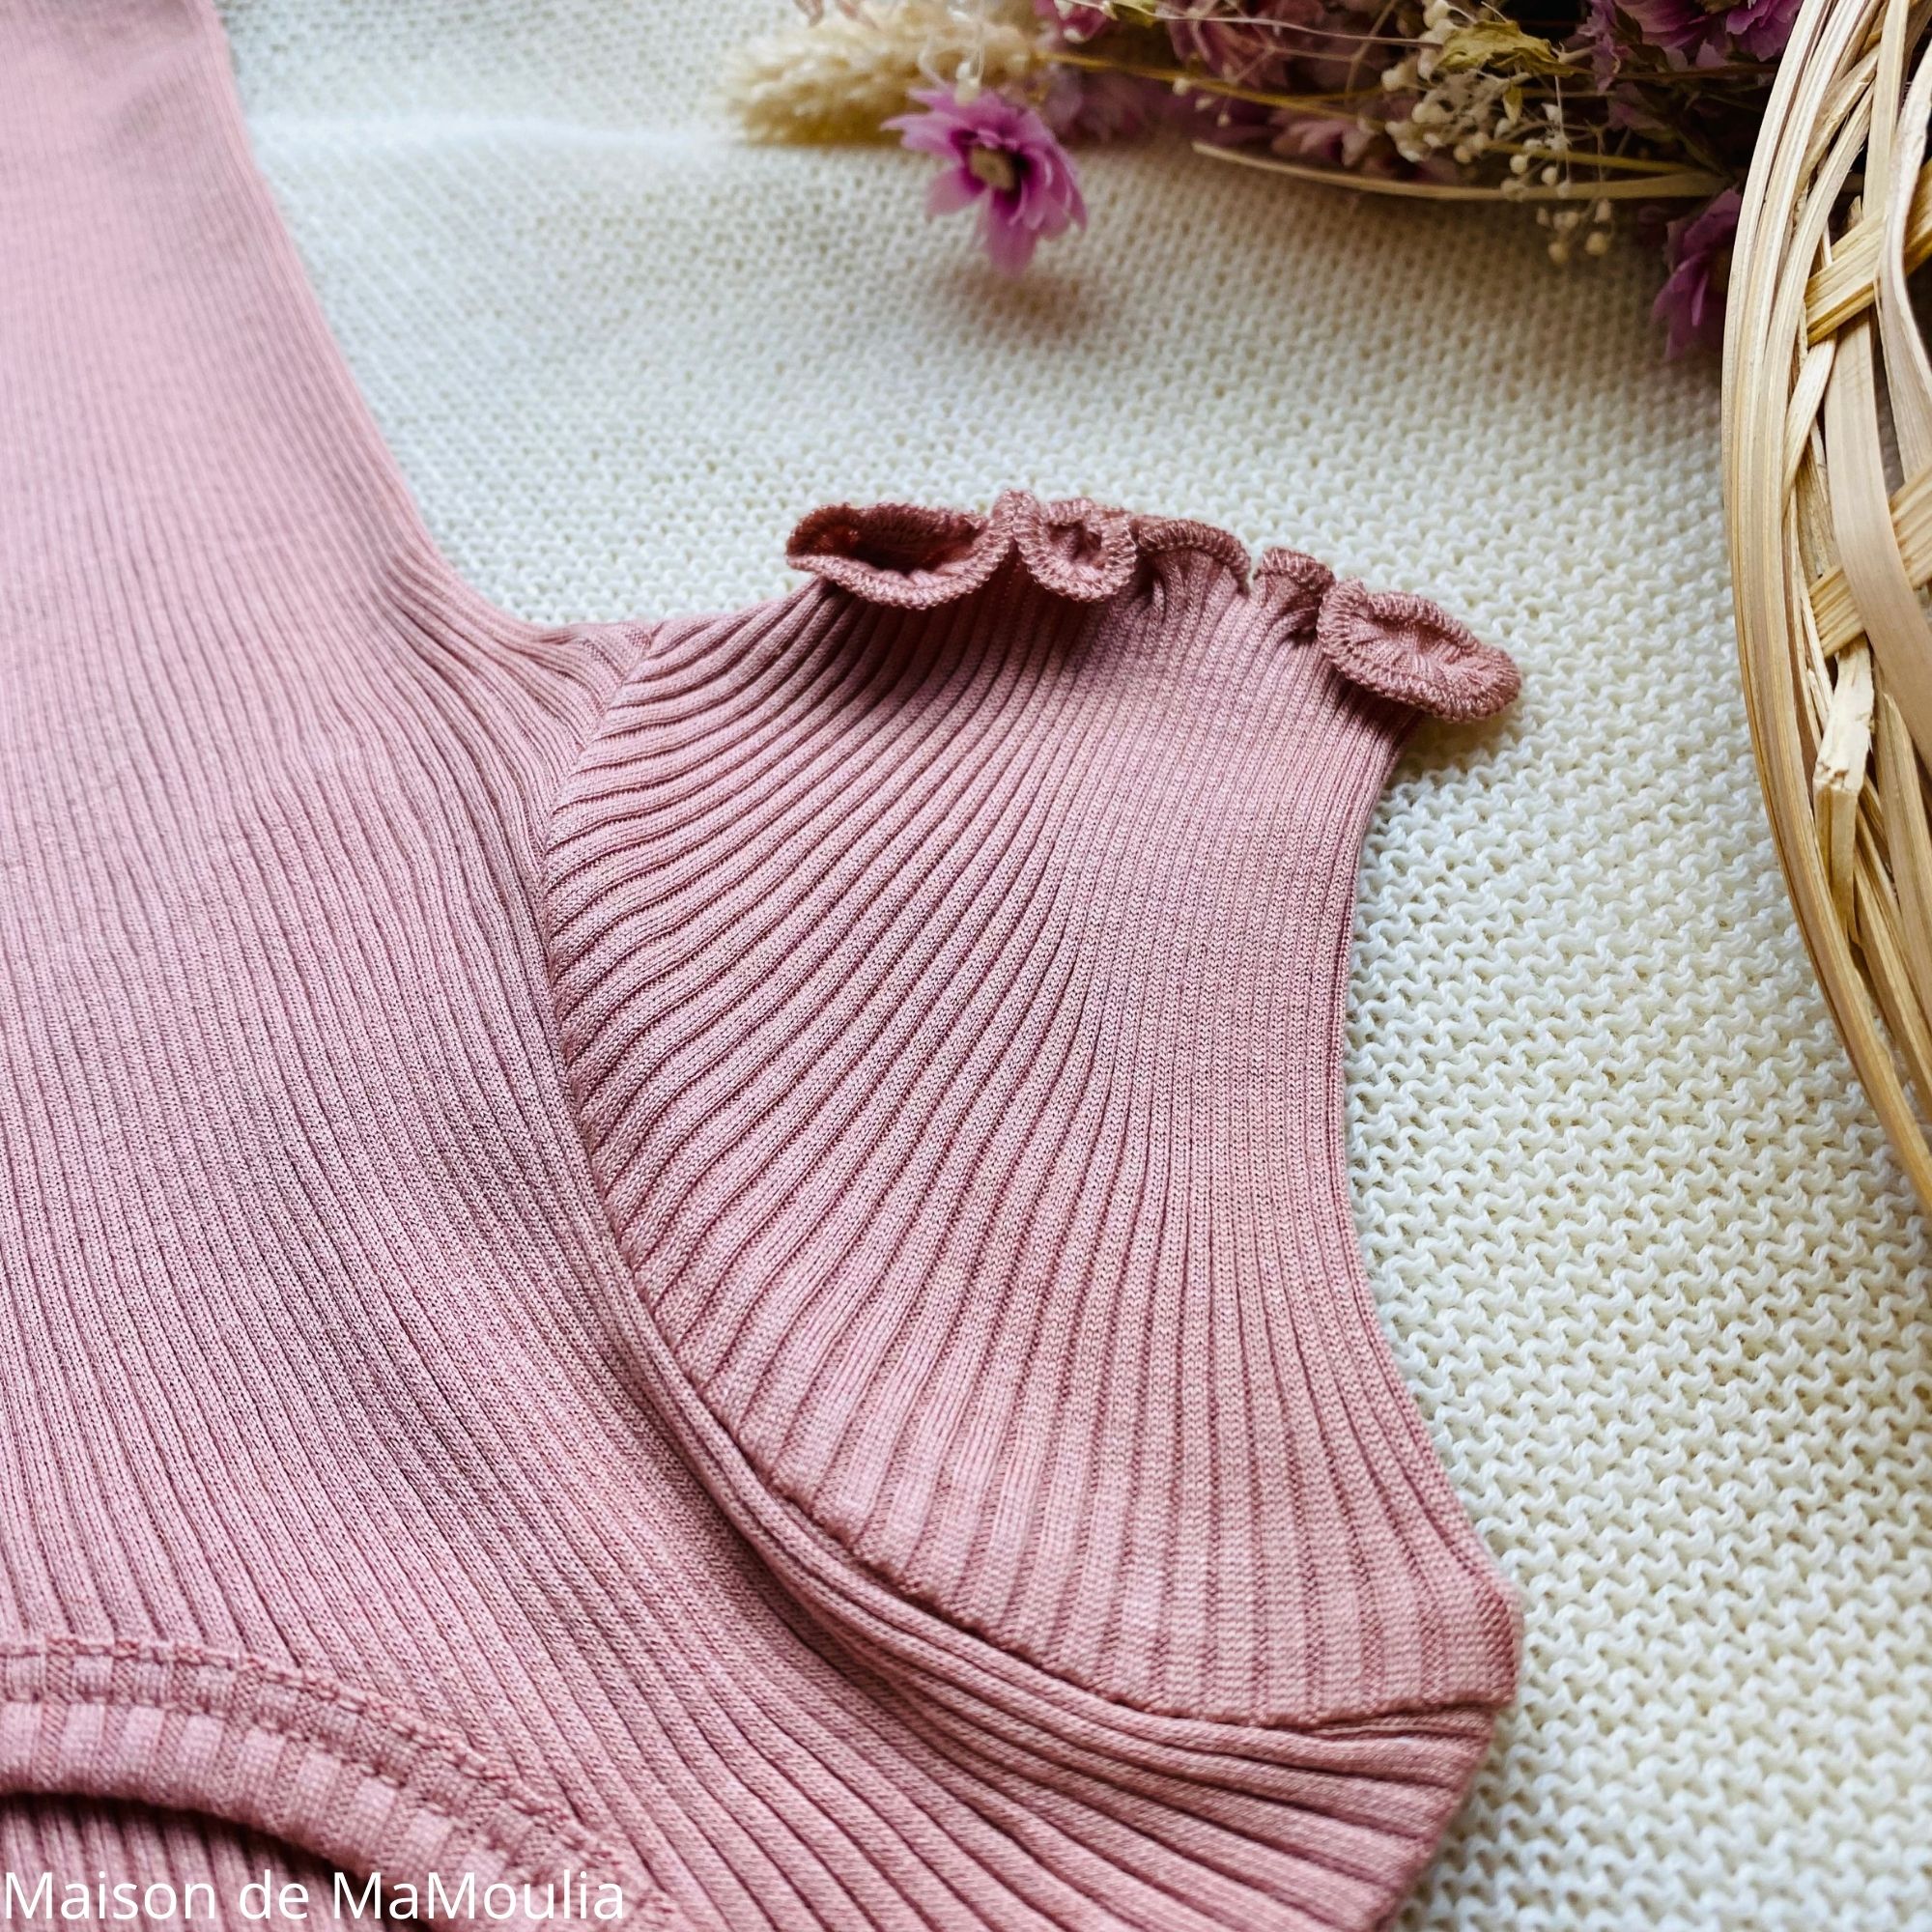 blomst-tshirt-manches-longues-bebe-enfant-soie-coton-minimalisma-maison-de-mamoulia-dahlia-rose-